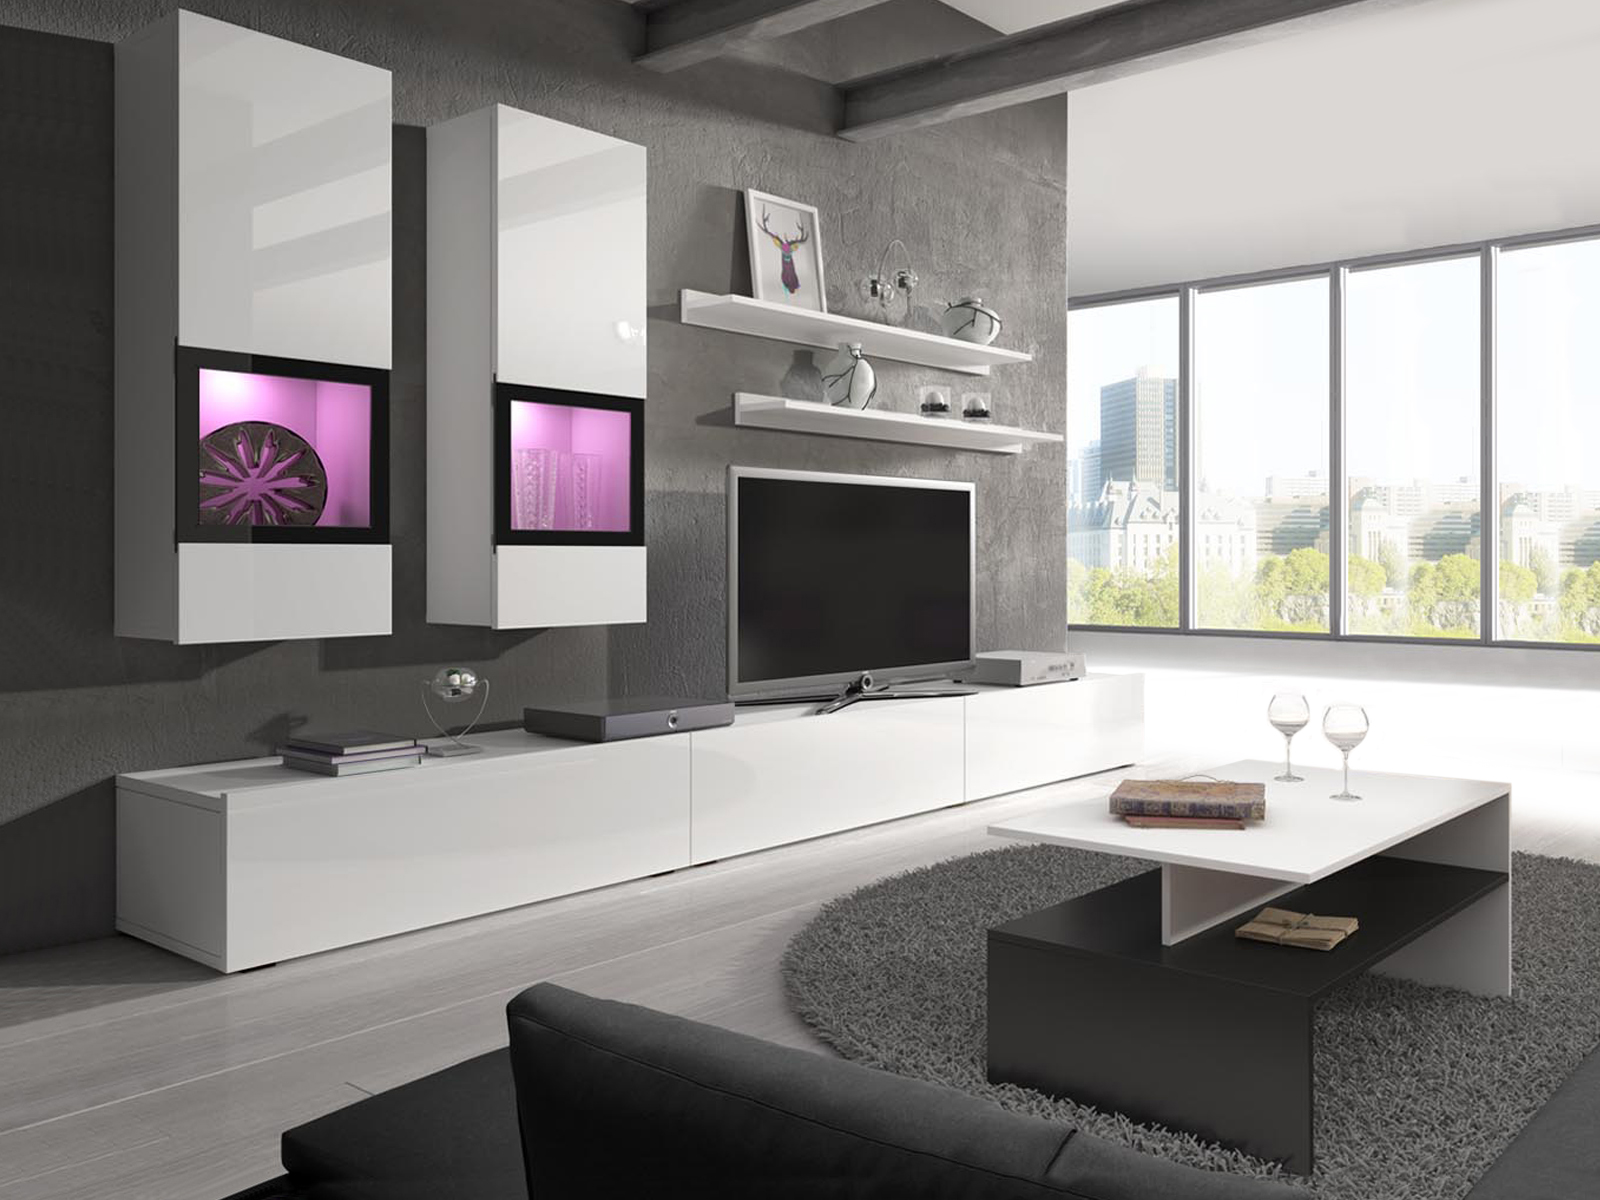 Tv-meubel set BABEL 5 deuren wit/hoogglans wit met verlichting met salontafel